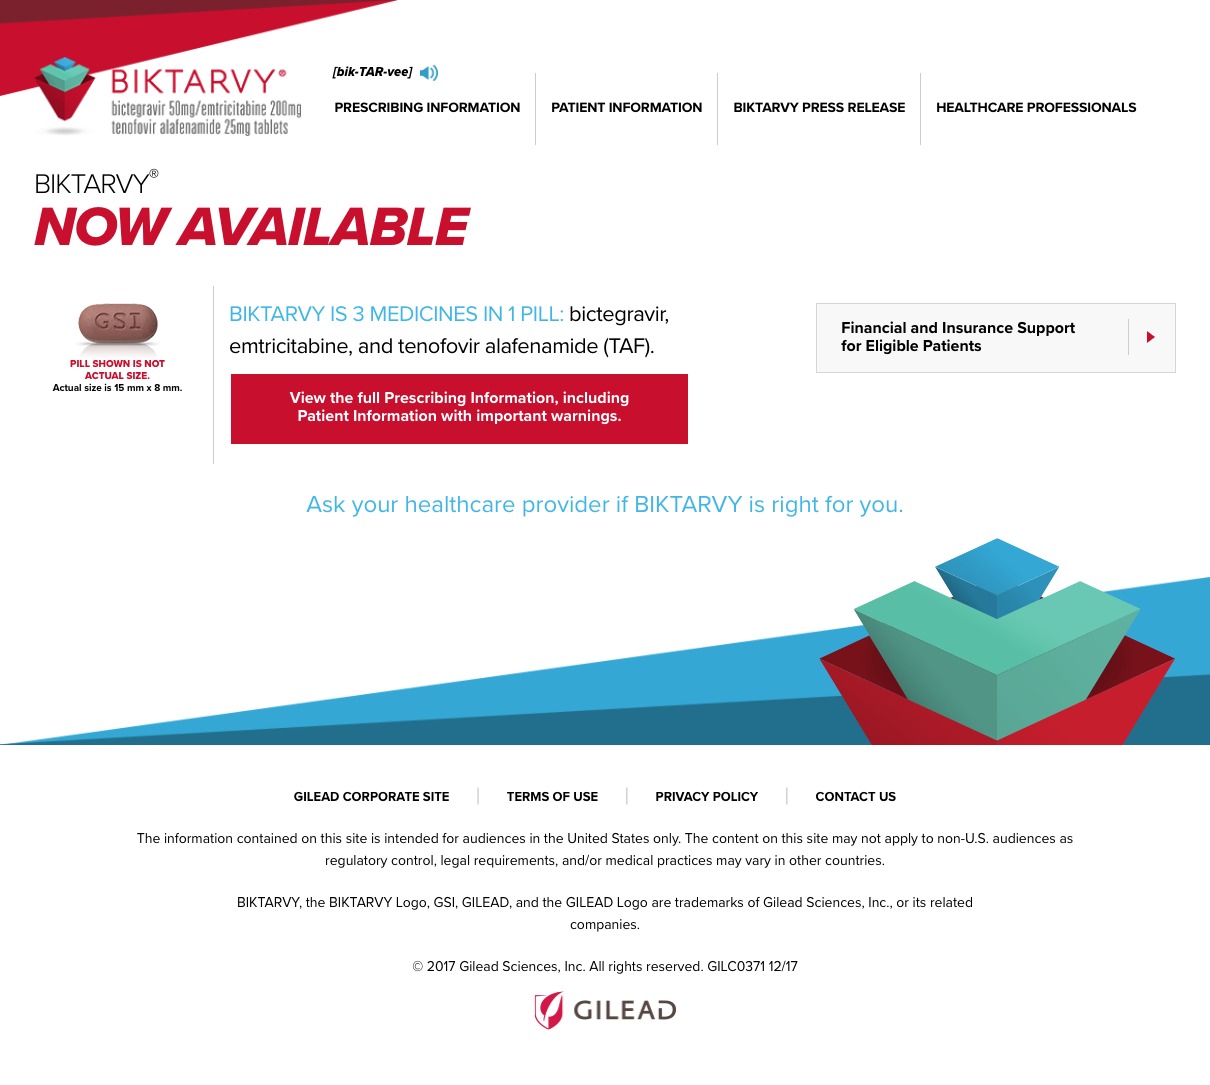 Biktarvy Screenshots - Now Available Patient Site - Homepage